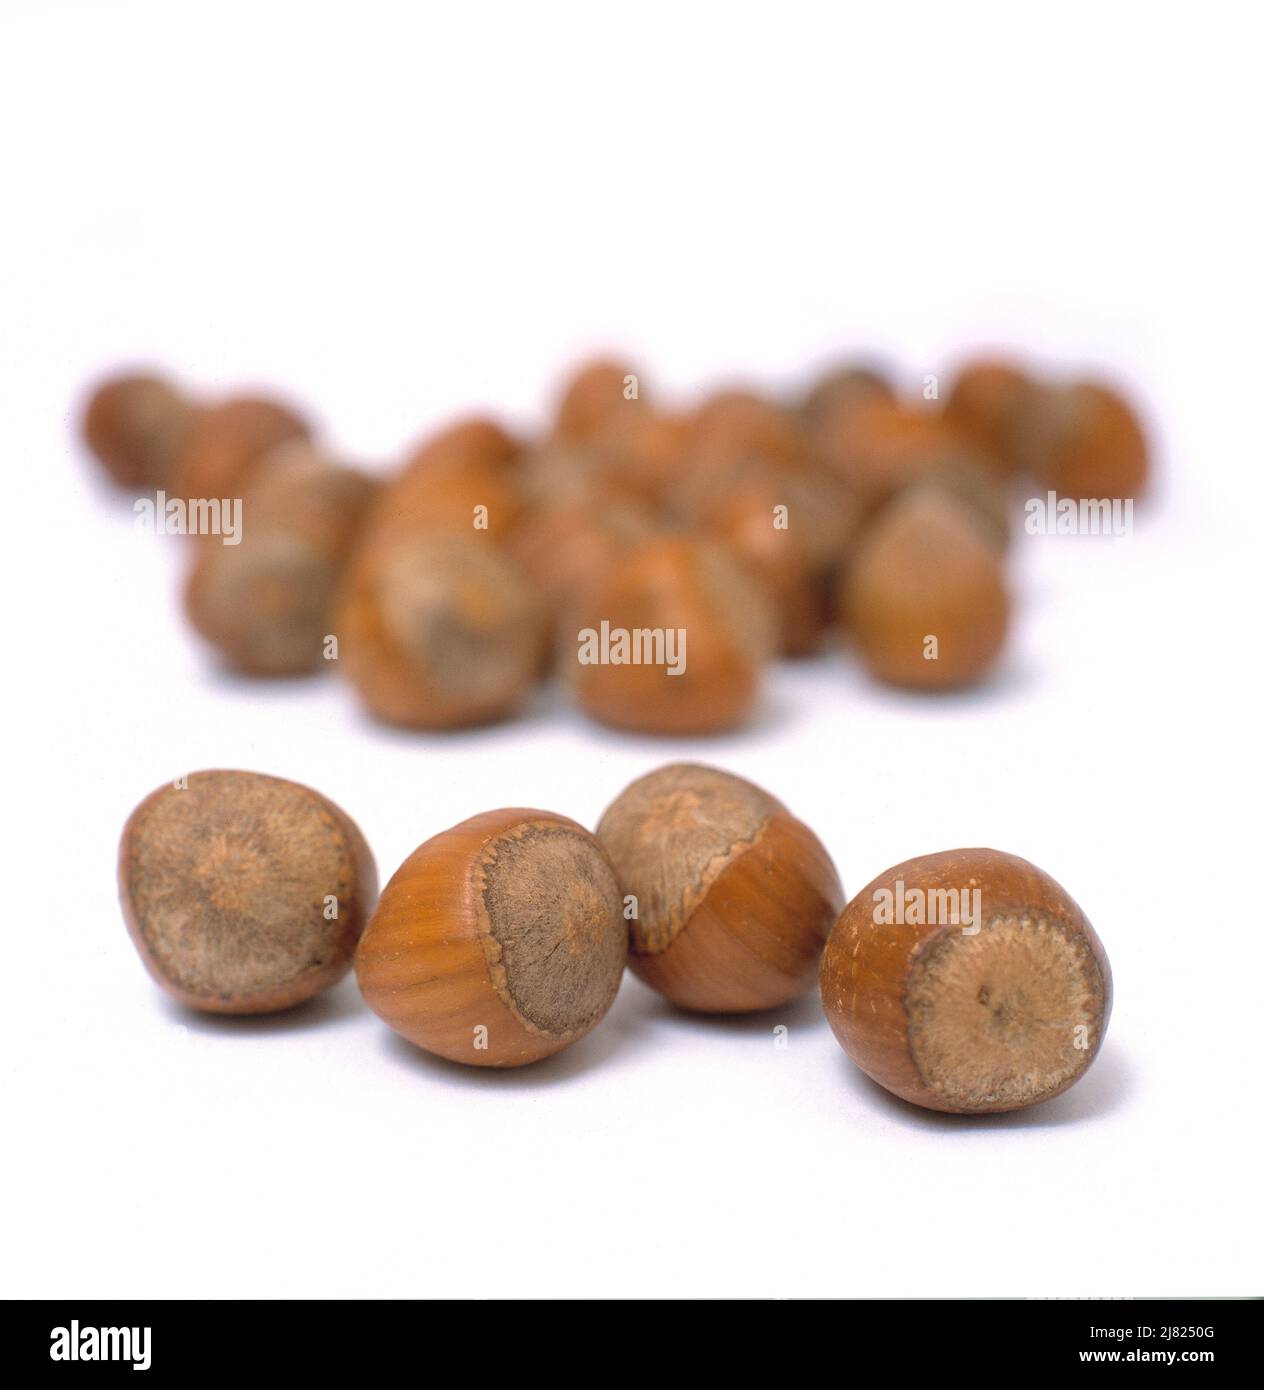 Whole hazelnuts isolated on a white studio background. Stock Photo